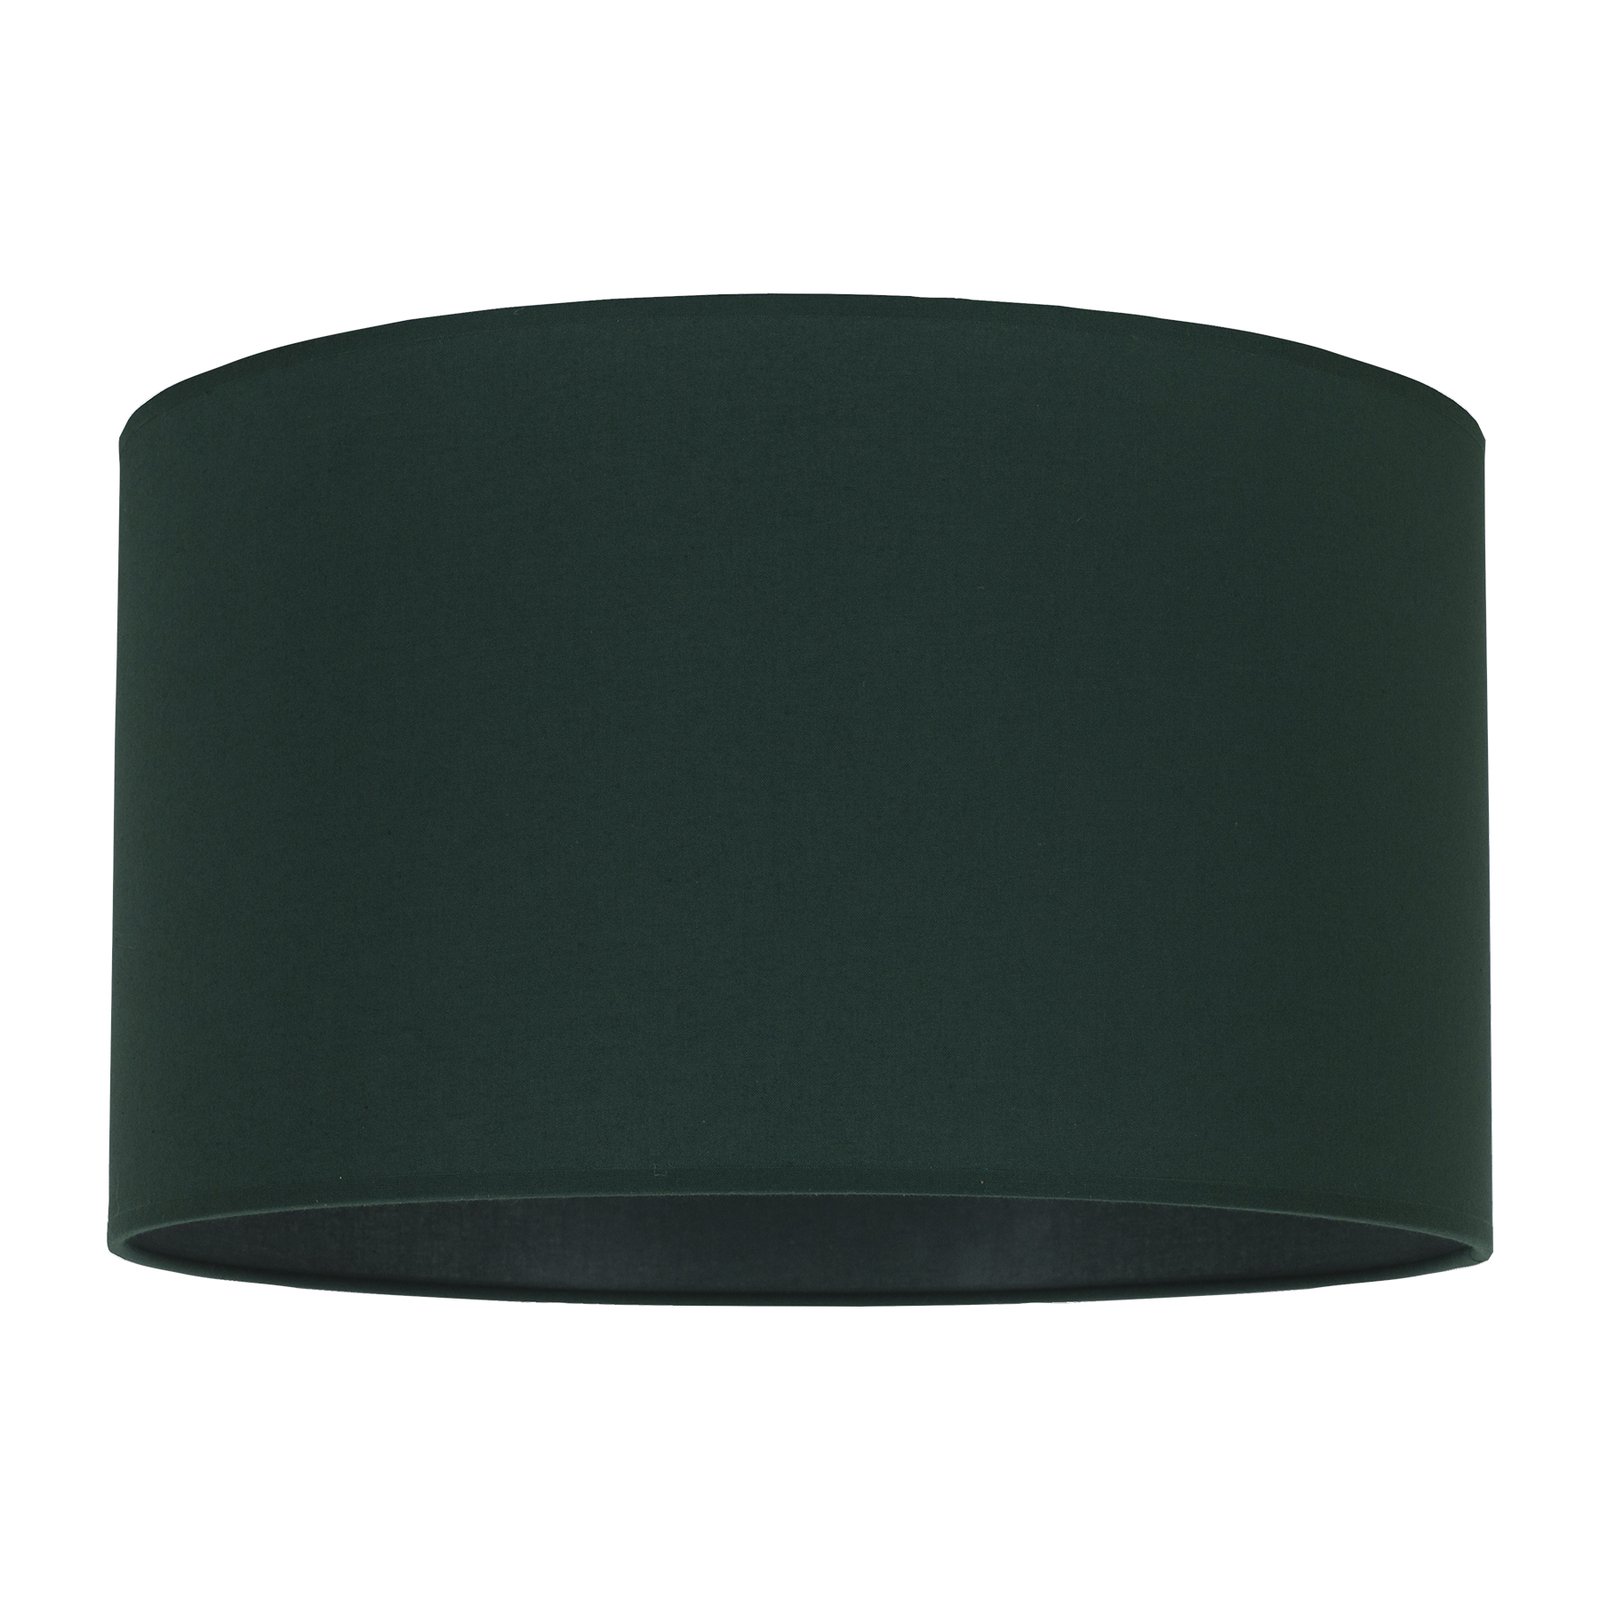 Lampskärm Roller, grön, Ø 40 cm, höjd 22 cm